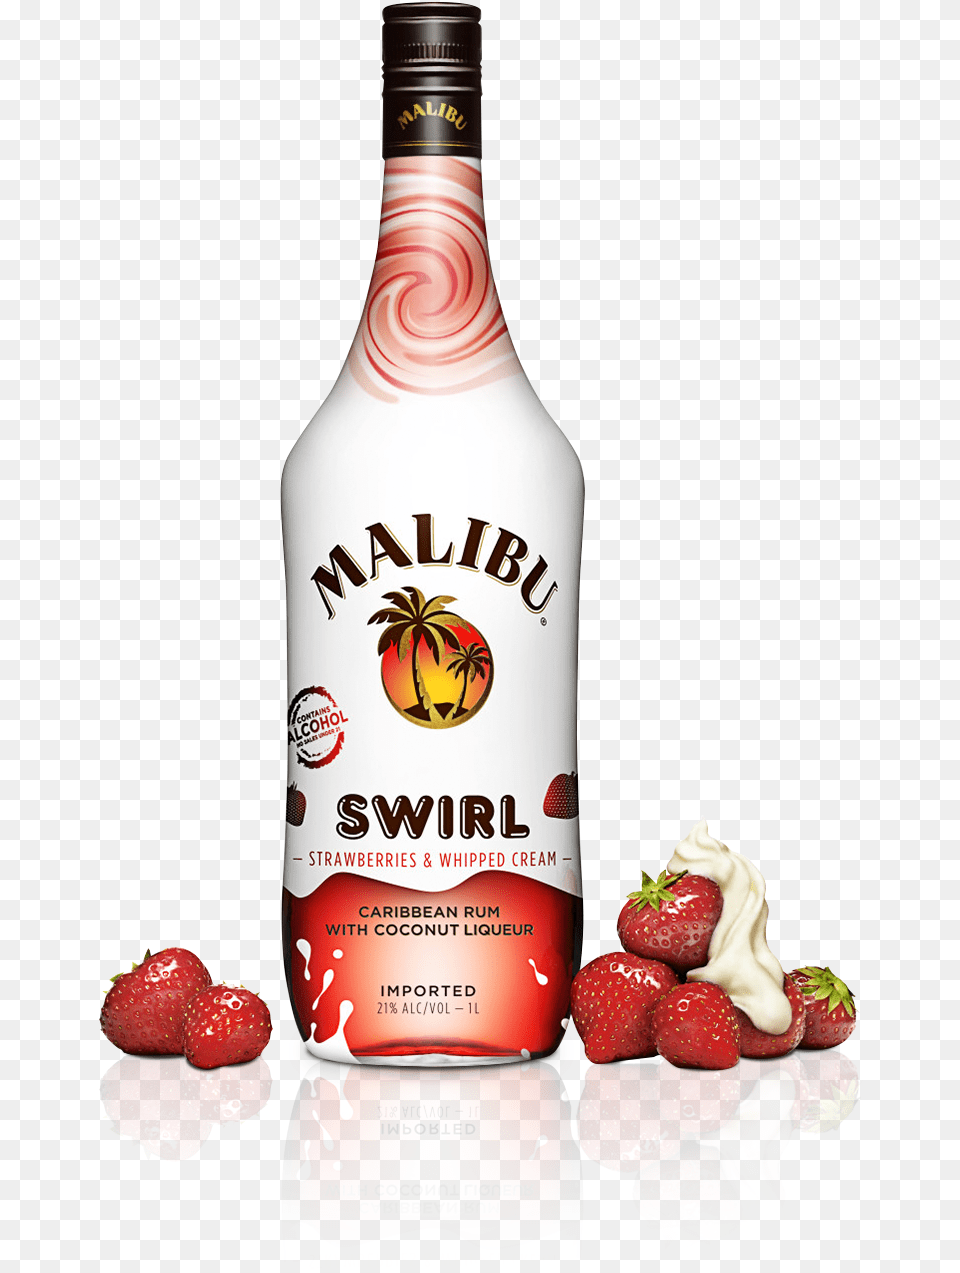 Malibu Swirl, Fruit, Berry, Strawberry, Produce Free Png